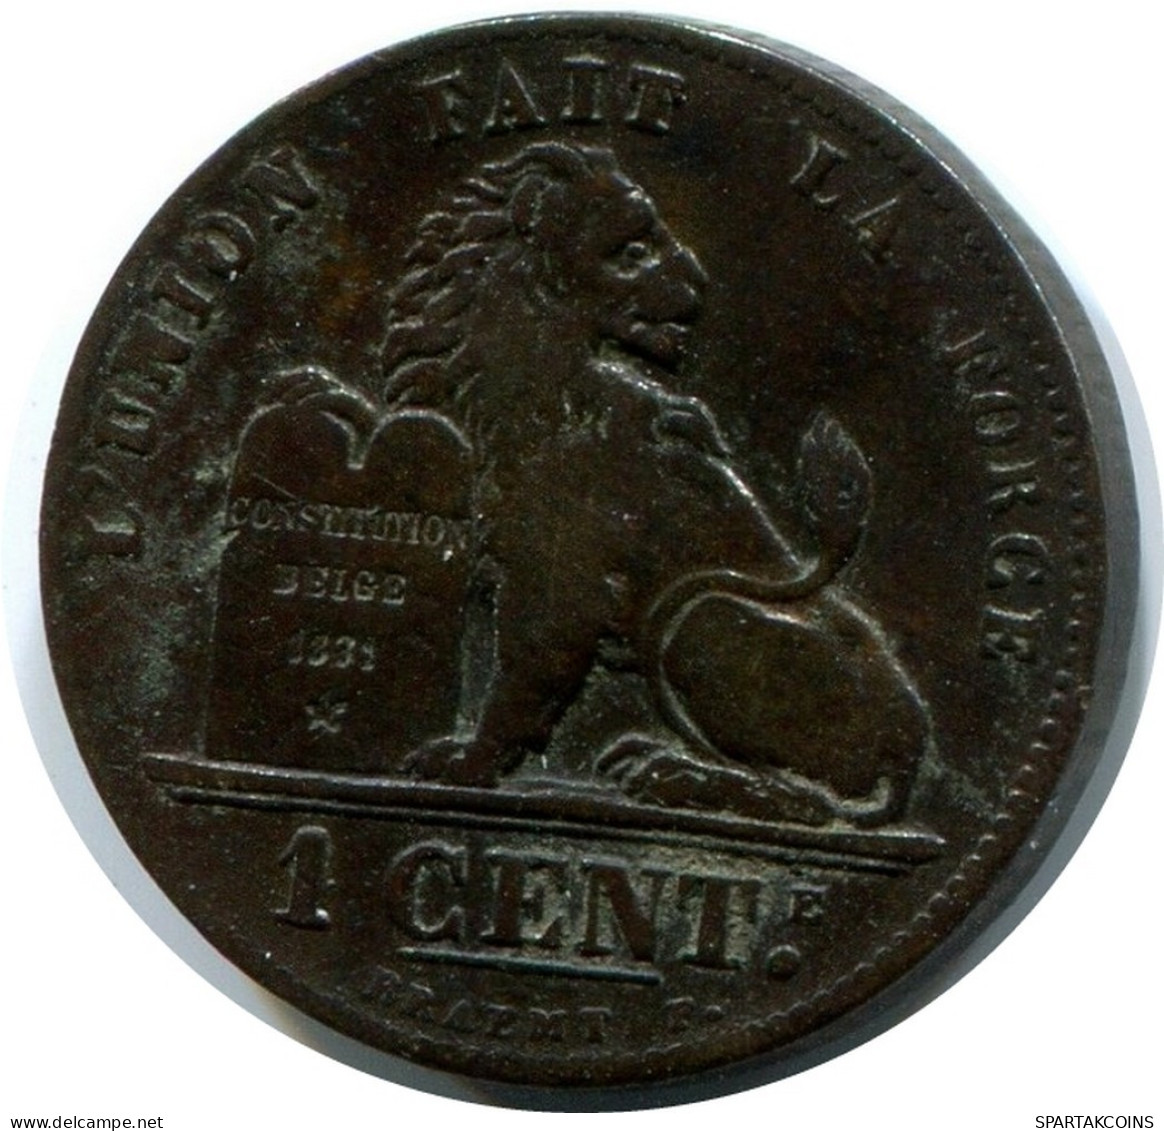 1 CENTIME 1899 BELGIQUE BELGIUM Pièce FRENCH Text #AX354.F.A - 1 Centime